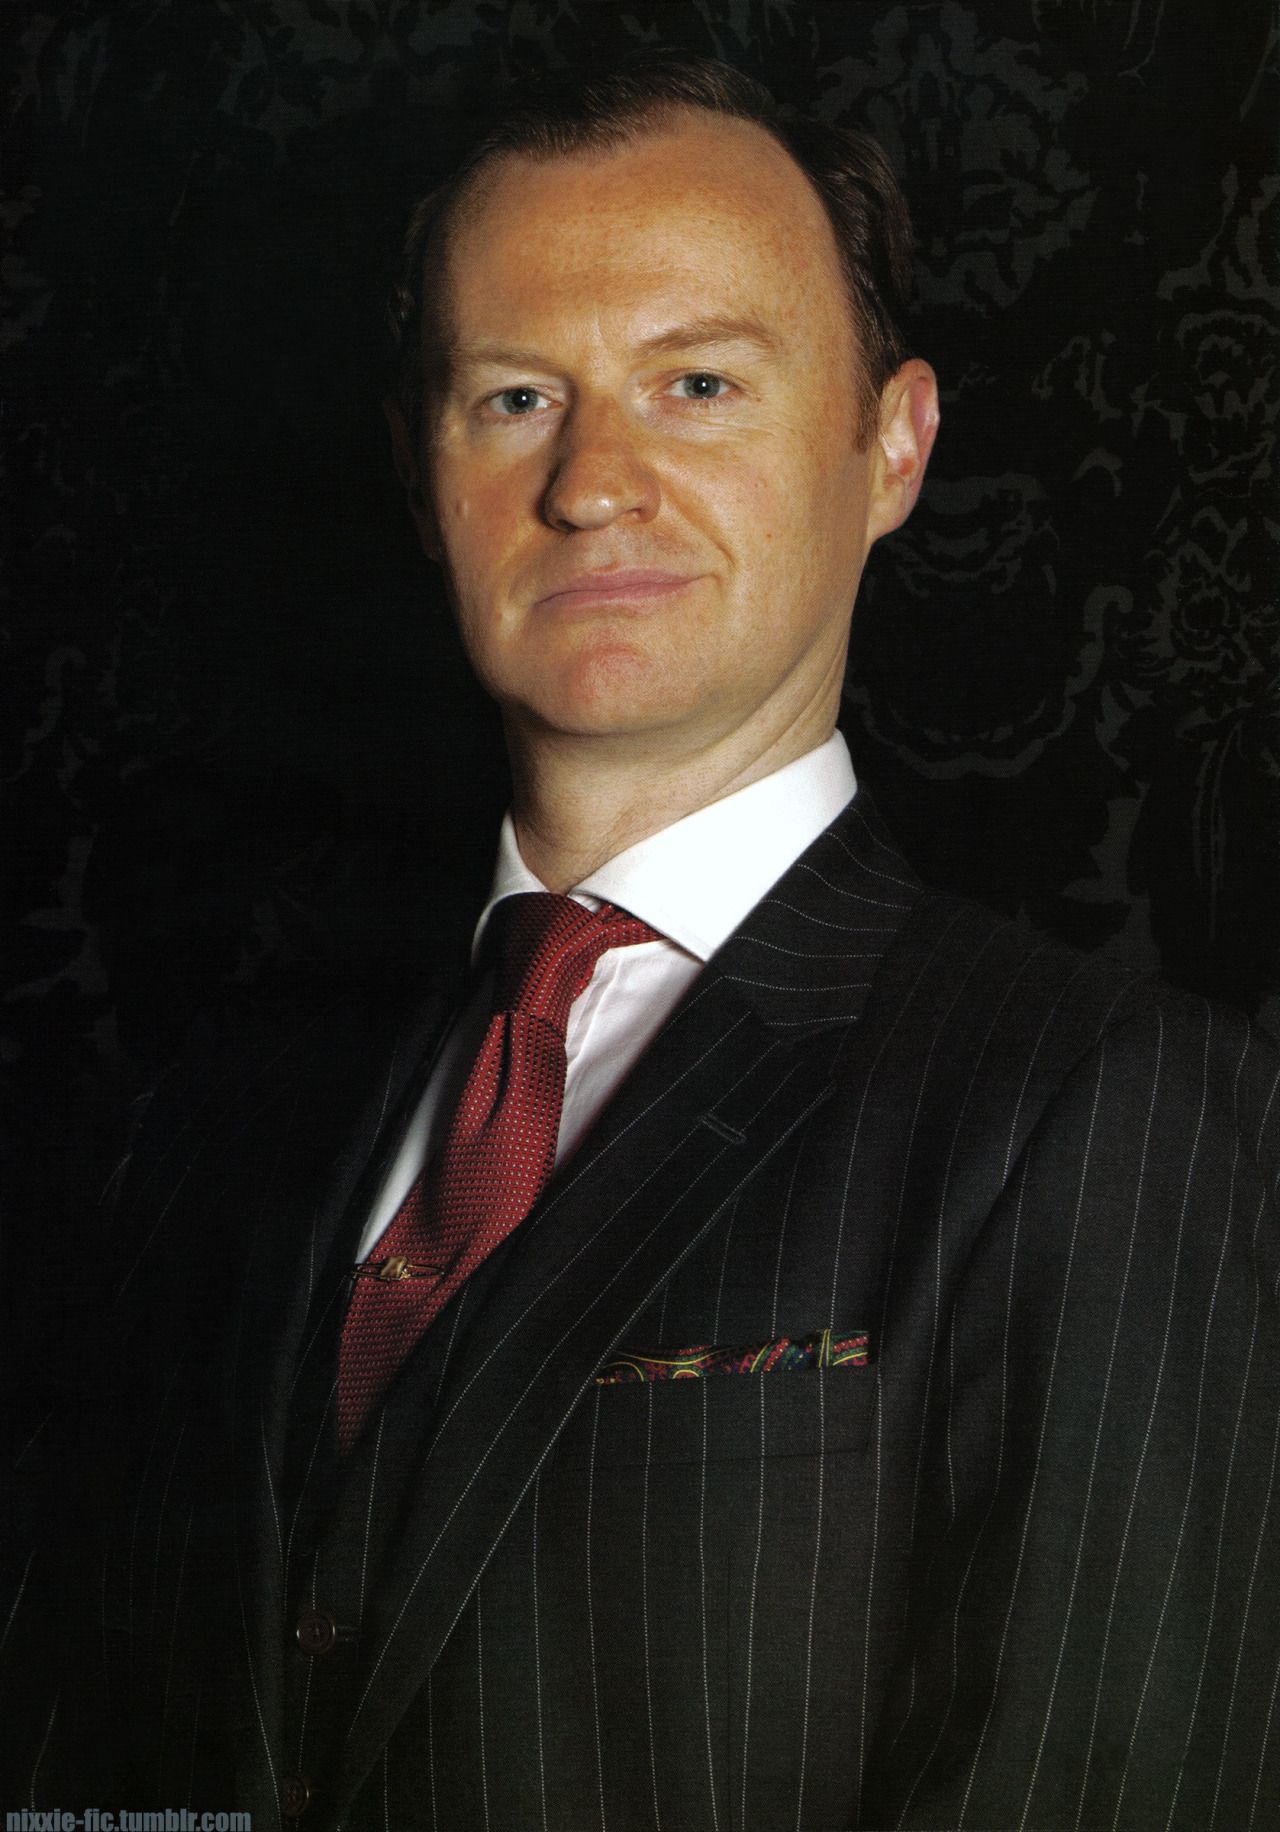 Super Hi Res Mycroft Holmes pt1 Adler Wallpaper Promo Image